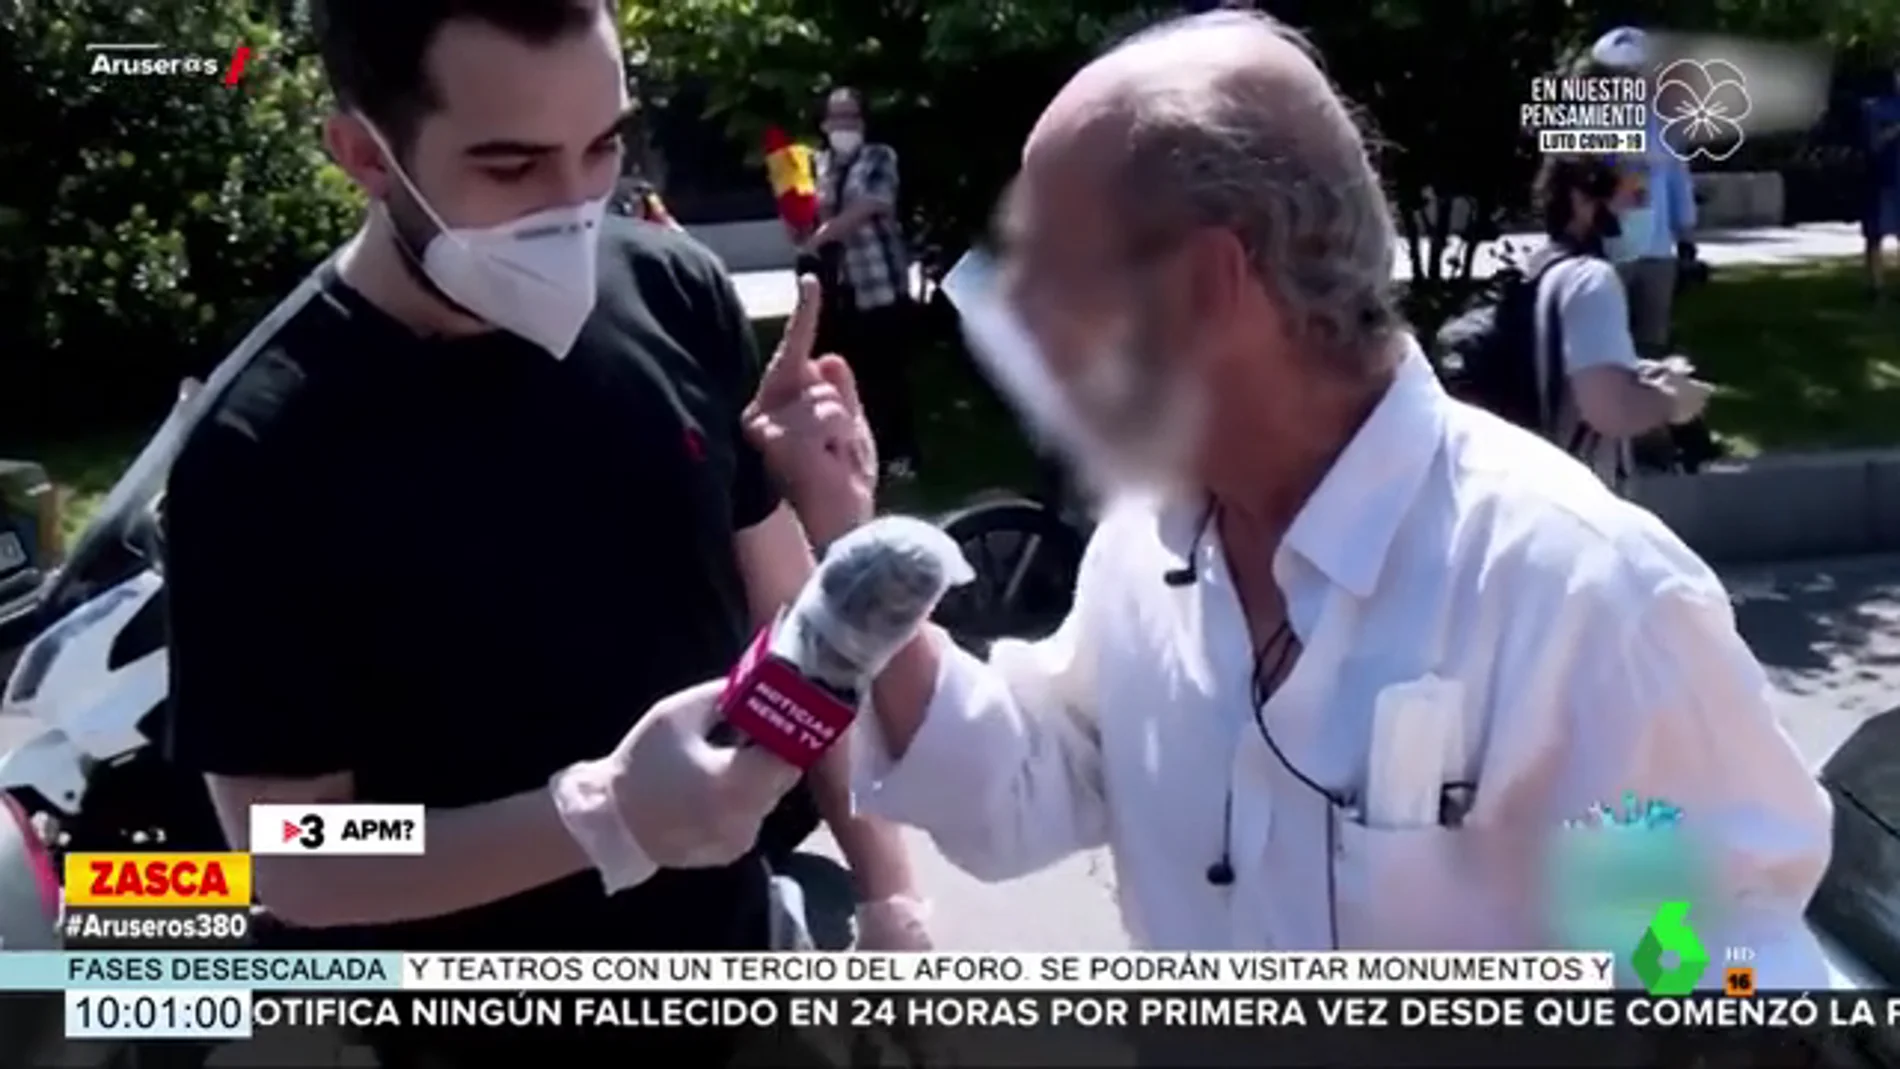 El viral enfado y la 'peineta' de un manifestante de Vox a un reportero: "¡A tomar por culo, vete a la mierda!"